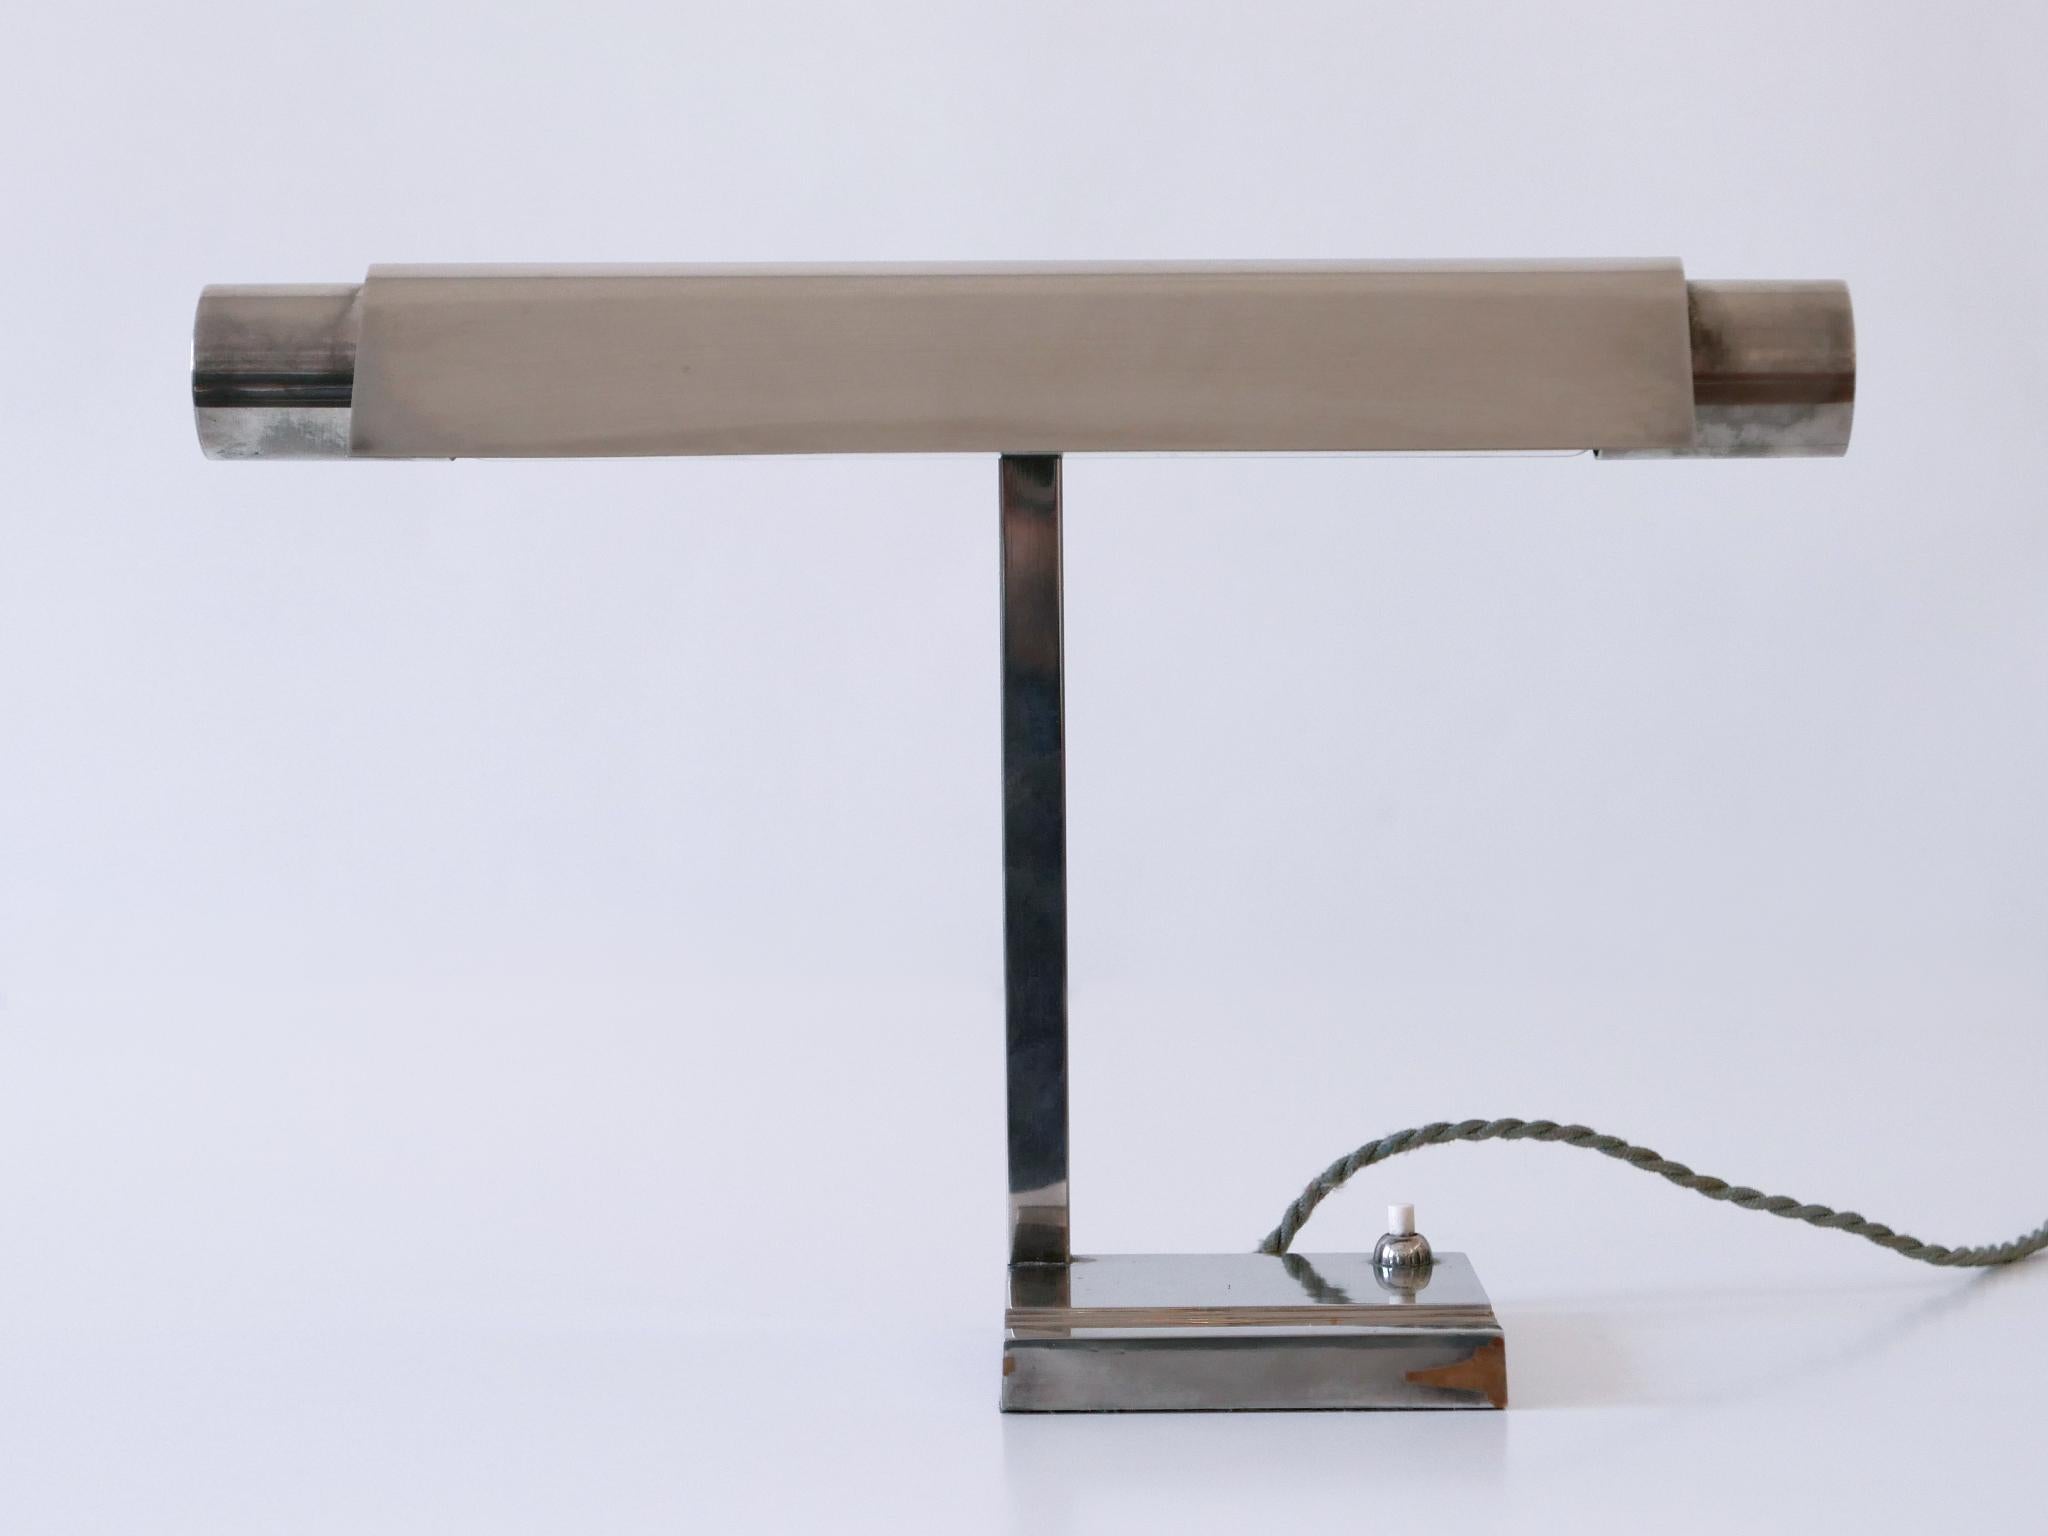 Brass Adjustable Neolux Desk Lamp by Louis Dernier & Hamlyn Limited England 1930s For Sale